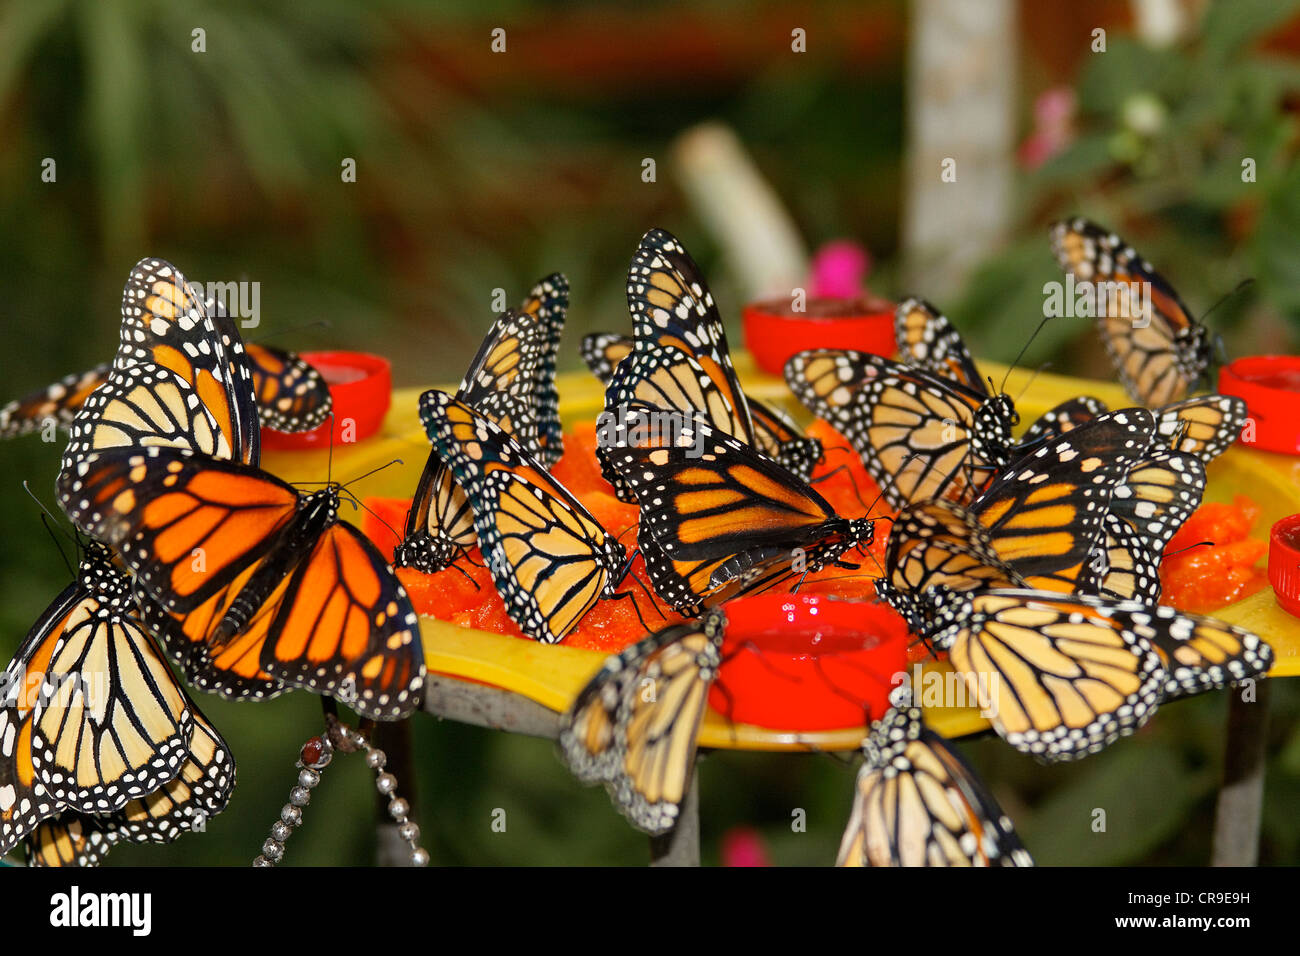 Schmetterlinge in der Natur - Schmetterling in der Natur Monarchfalter - Danaus Plexippus Bedrohte Tierart - geschützte Arten Stockfoto